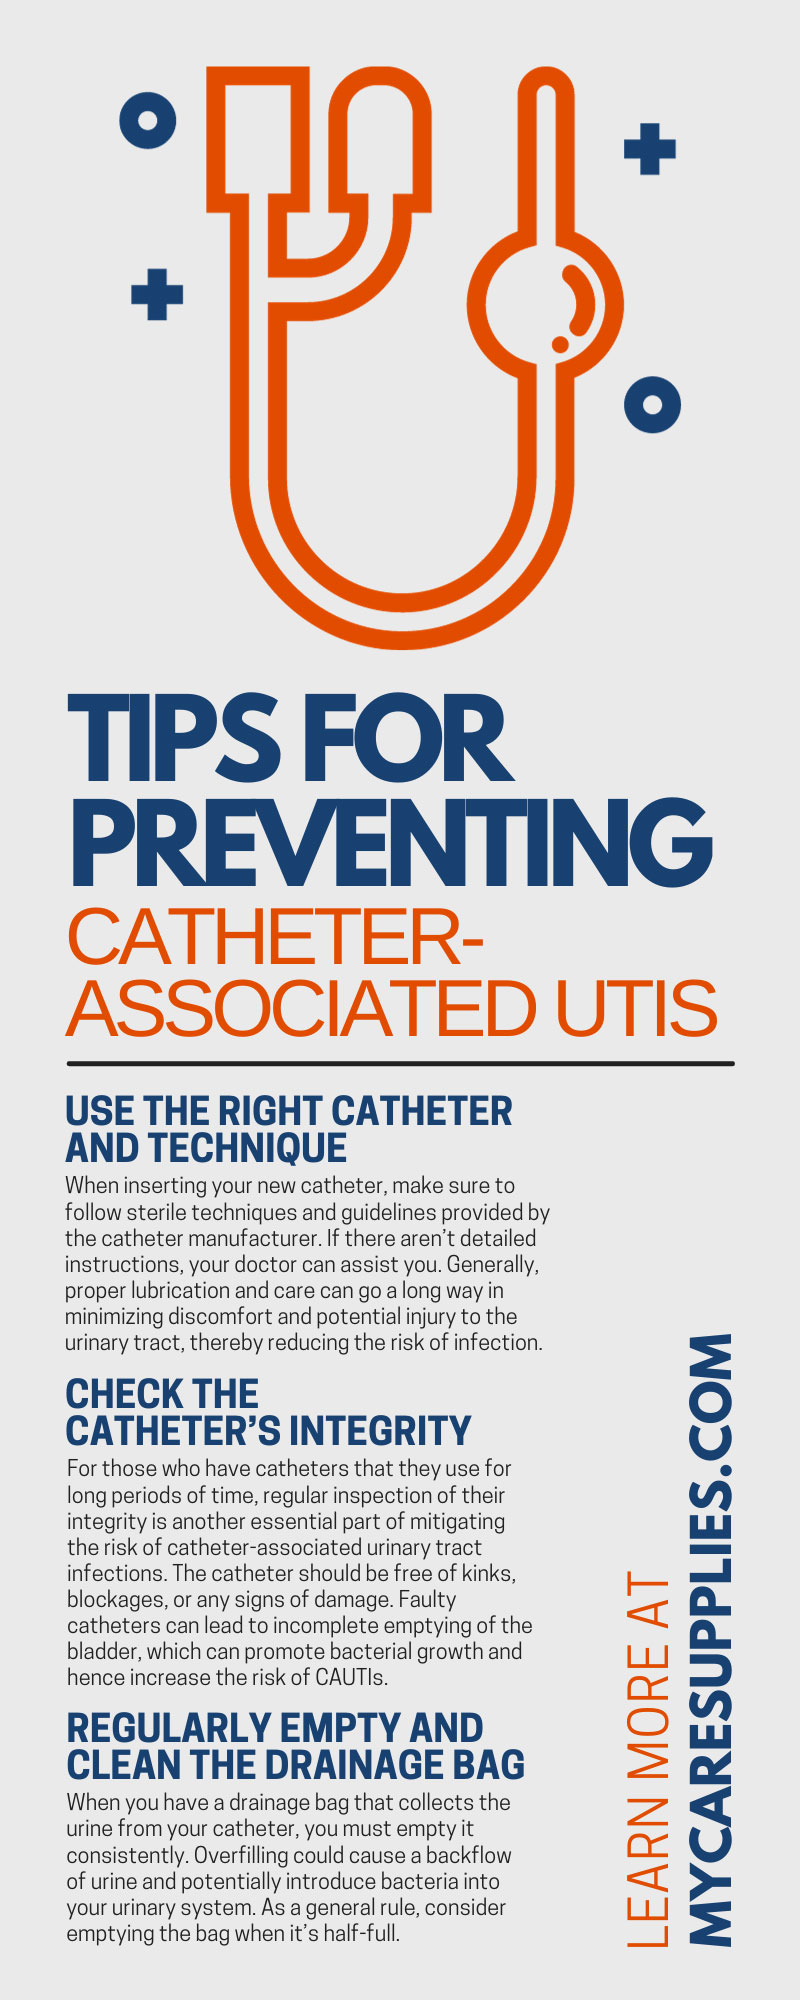 Tips for Preventing Catheter-Associated UTIs